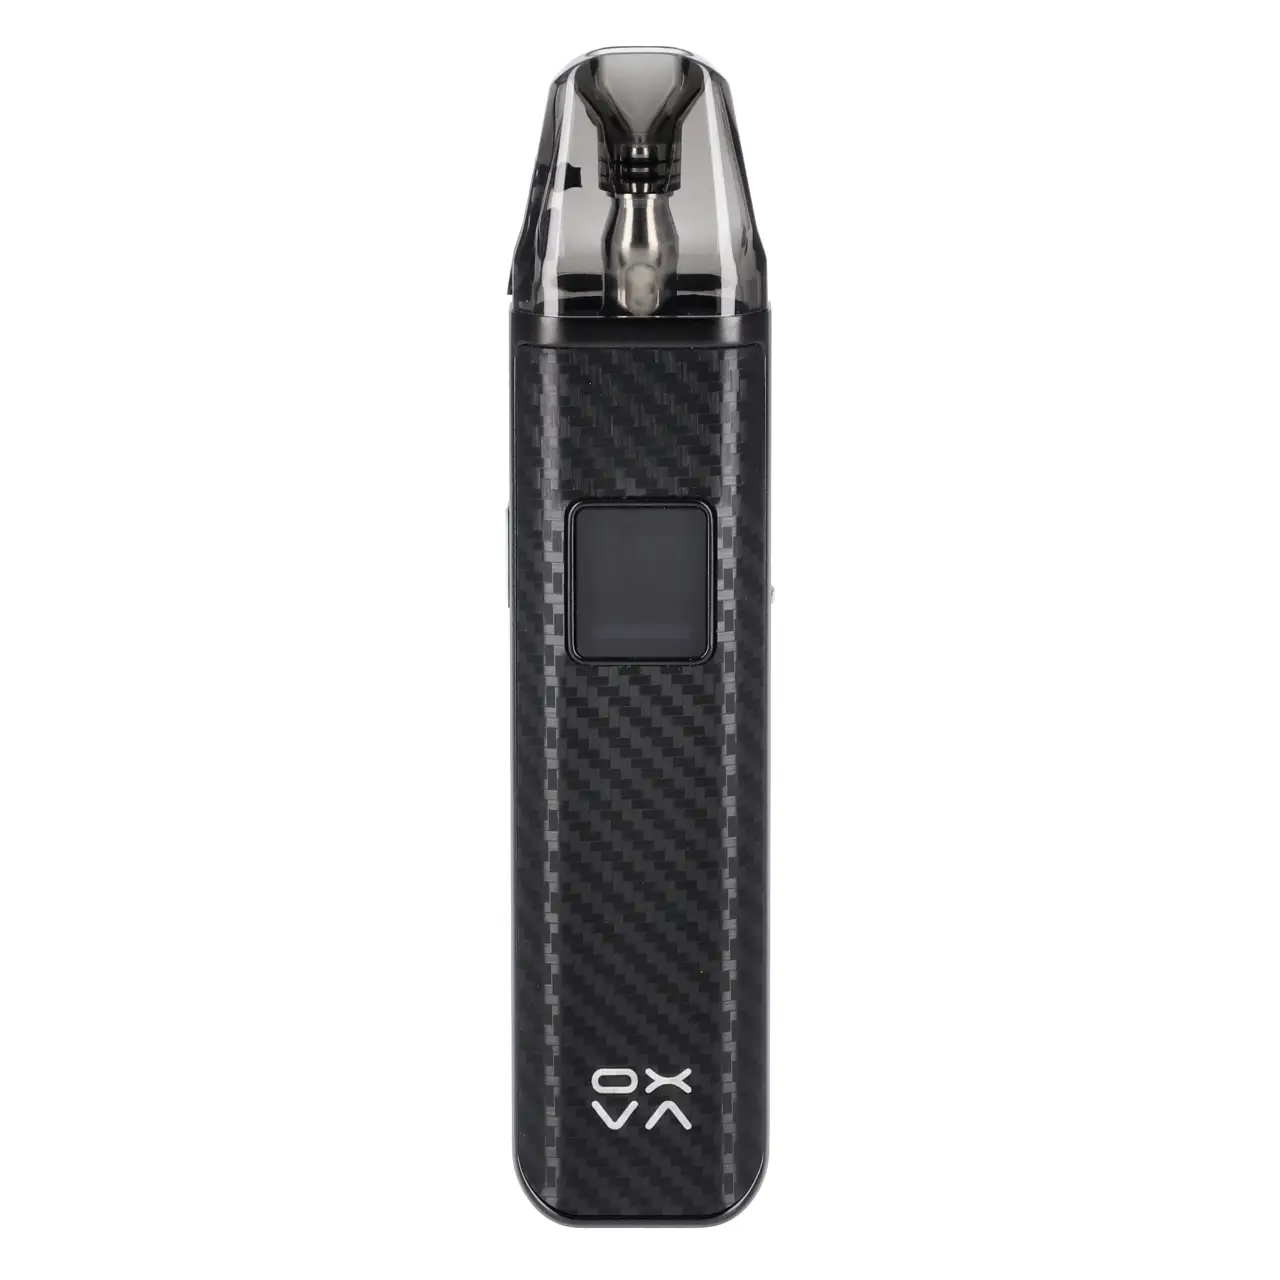 Oxva Xlim Pro E-Zigarette in Carbon Black von vorne